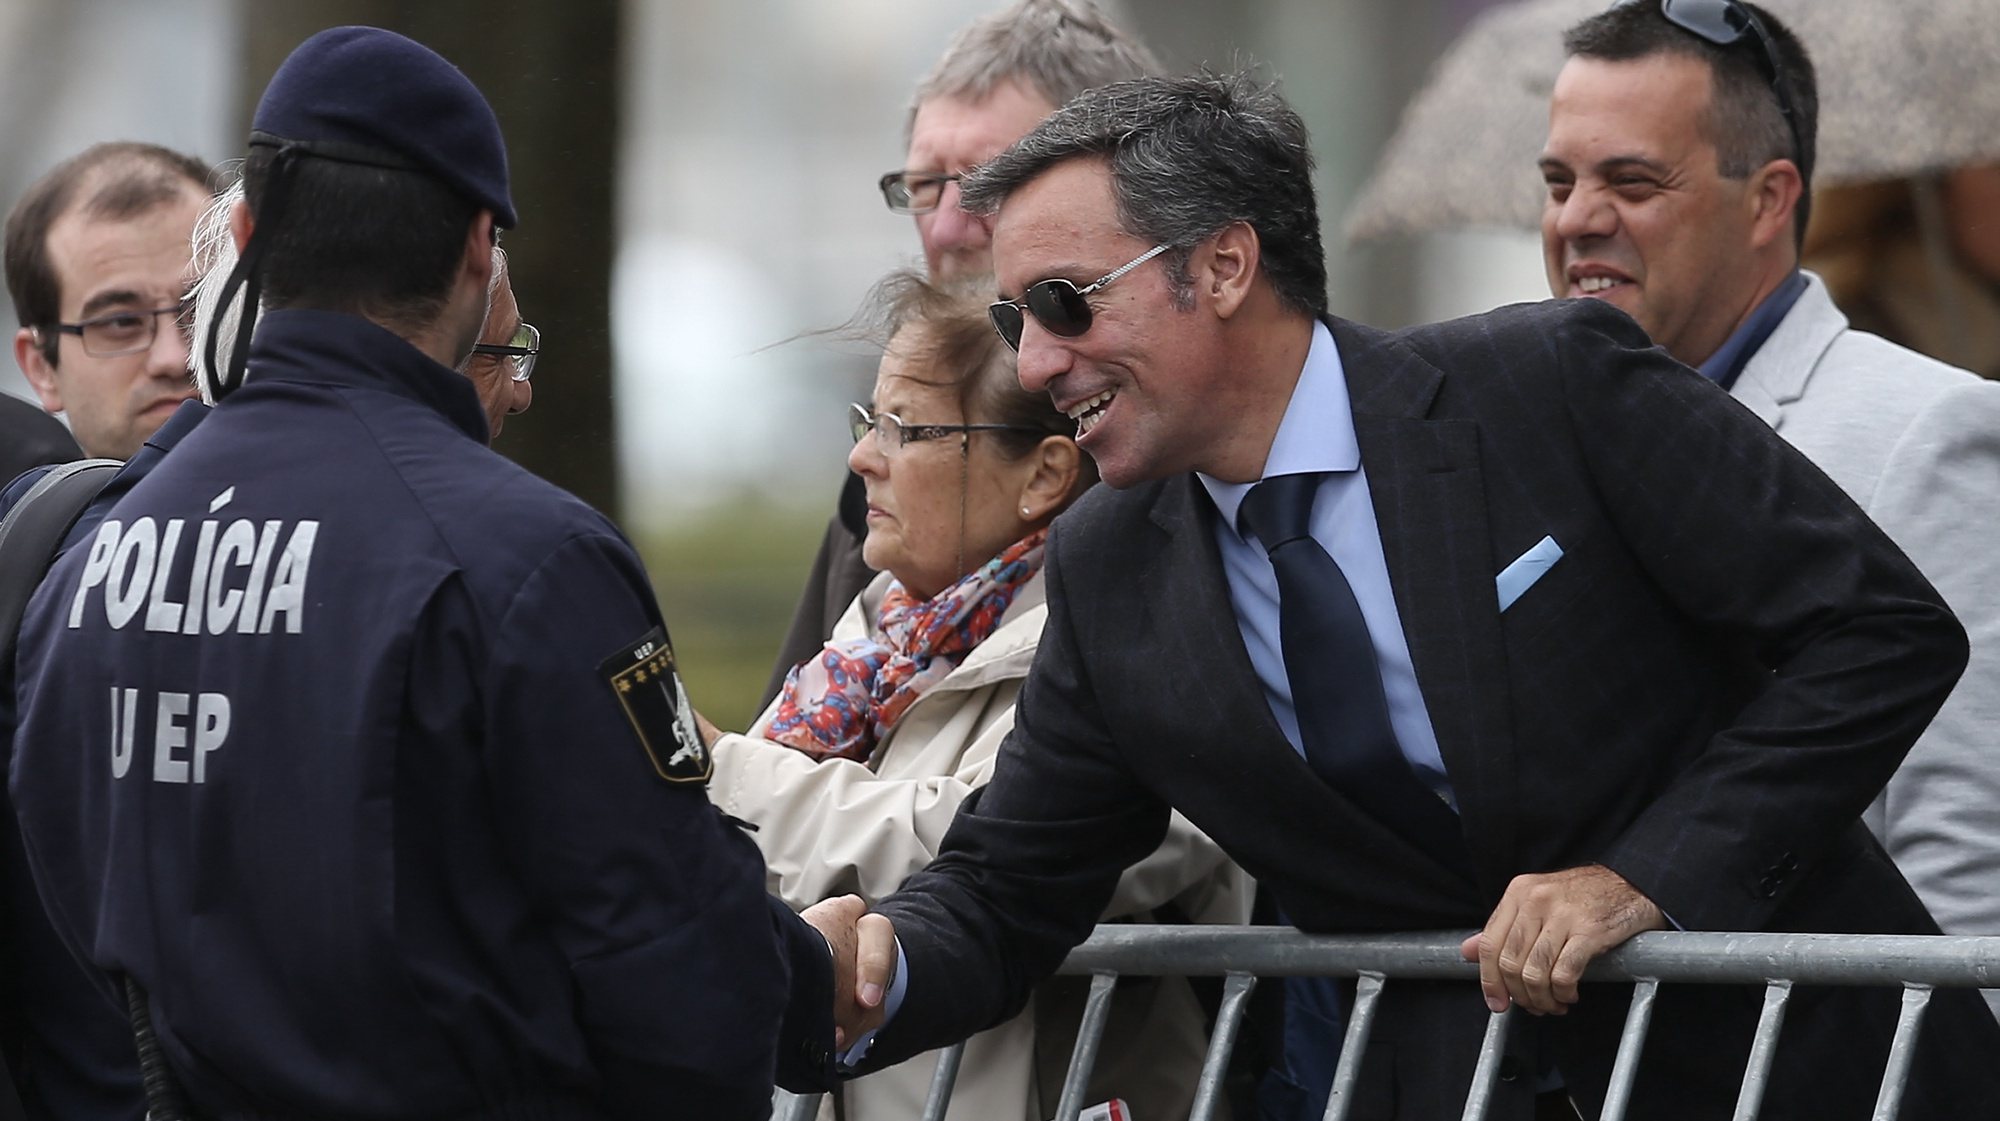 Nuno Rebelo de Sousa, filho de Marcelo Rebelo, no dia da posse do pai como Presidente da República, durante a cerimónia em frente ao Palácio de Belém em Lisboa, 09 de março de 2016. JOSÉ SENA GOULÃO/LUSA